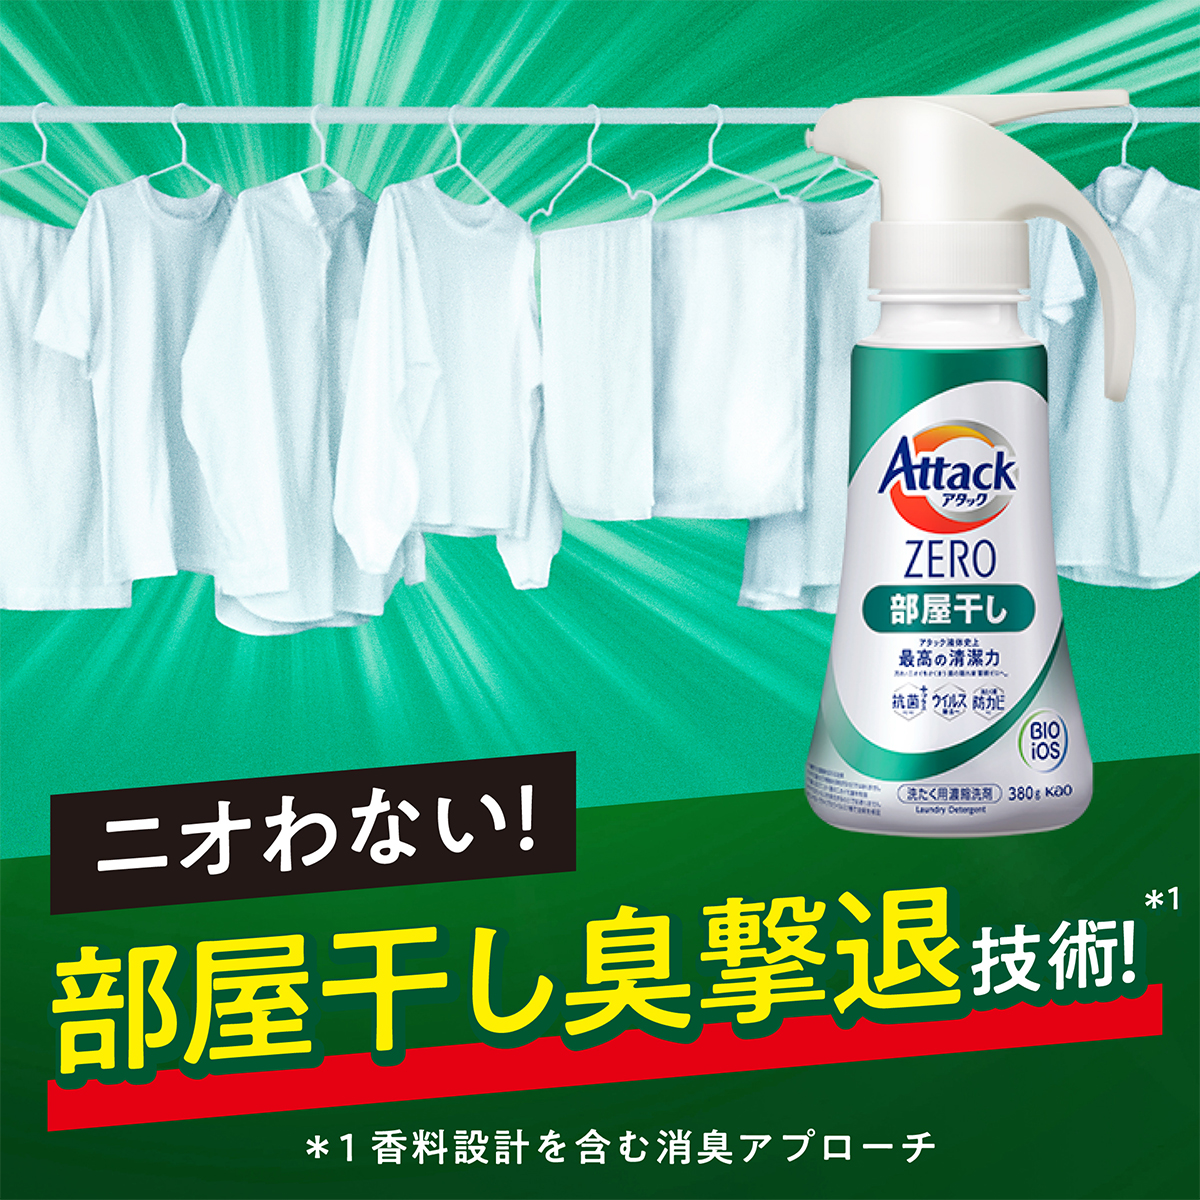 アタックZERO Attack ZERO 洗濯洗剤 部屋干し 詰め替え 超特大 2000g×4袋